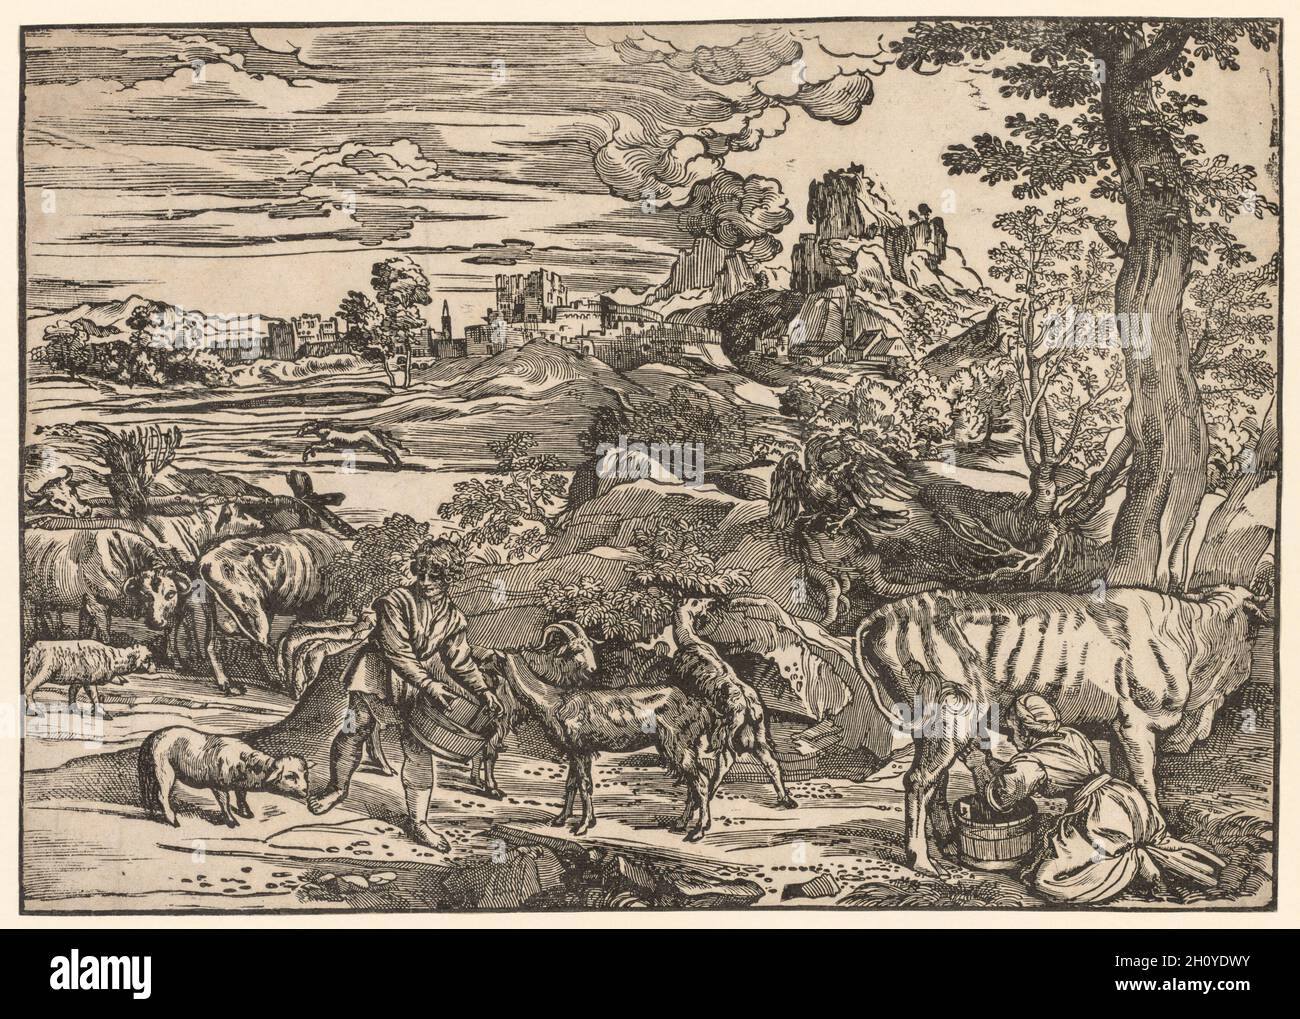 Paysage avec une Milkmaid, c.1525. Niccolo Boldrini (italien, c.1500-aft 1566).Coupe de bois; image: 37.6 x 53 cm (14 13/16 x 20 7/8 in.); feuille: 37.6 x 53 cm (14 13/16 x 20 7/8 in.).Dans les années 1620, Titien a commencé à élargir le potentiel expressif du paysage, qui a acquis une importance croissante au-delà de sa fonction comme cadre pour l'action figurale.Comme aucune des peintures de Titien ne donne une telle importance au paysage, l'artiste se sentait probablement plus libre d'expérimenter dans les imprimés, un support souvent choisi pour de nouveaux modes d'expression.Paysage avec une Milkmaid, qui semble à l'image d'une simple scène rustique de Banque D'Images